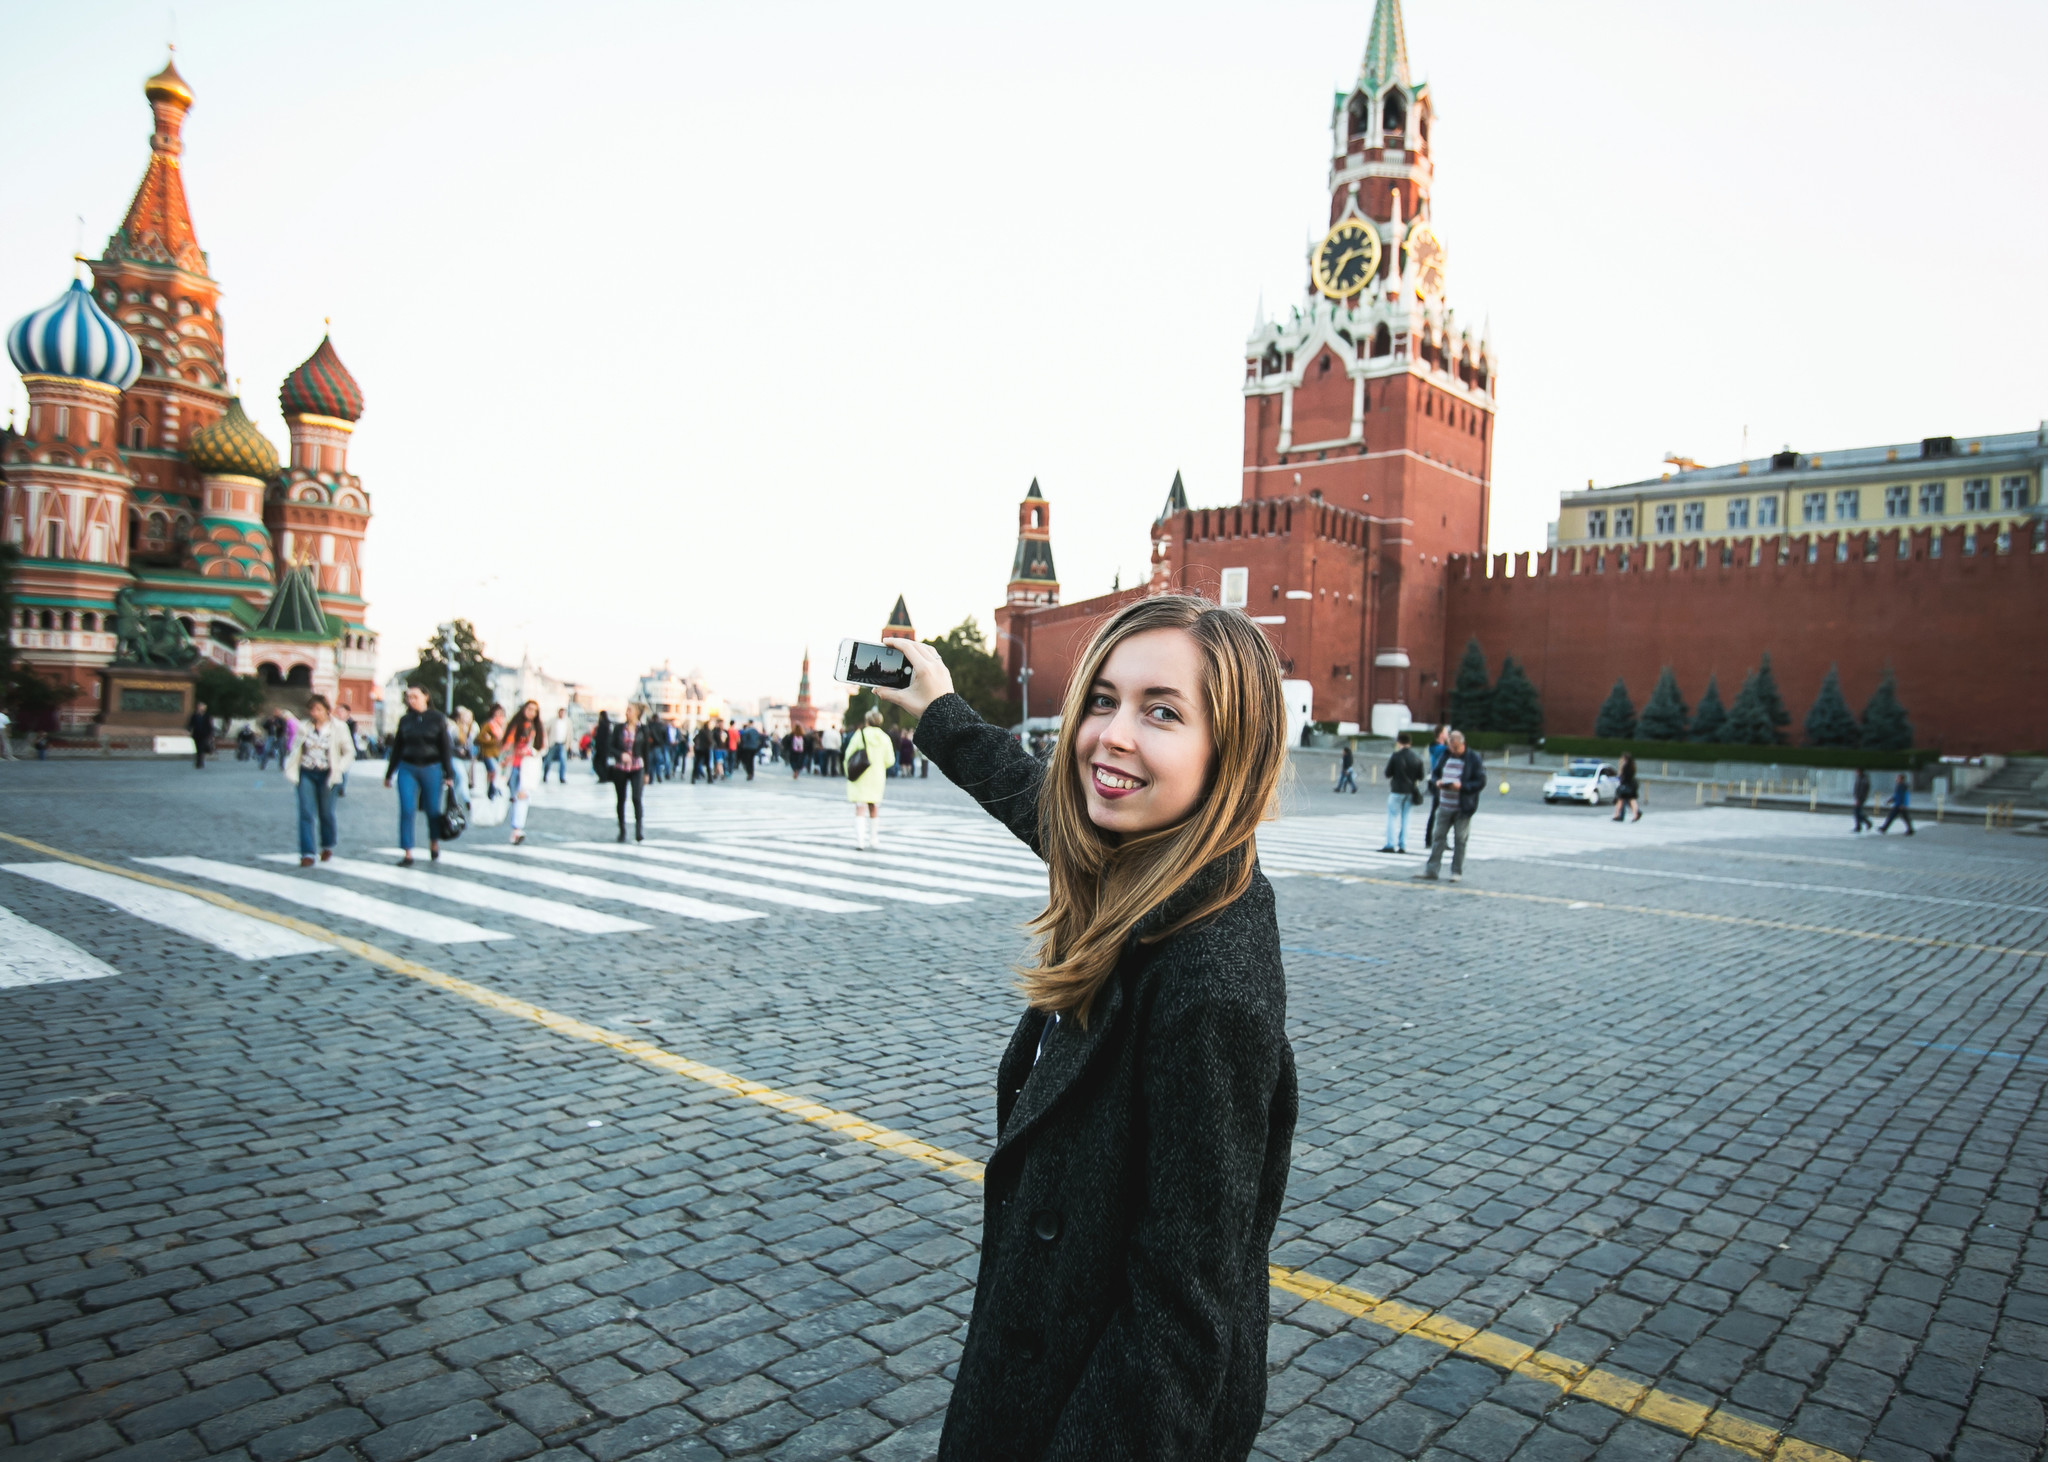 Москва фотки людей. Люди на красной площади. Селфи на красной площади. Фотосессия на красной площади. Человек на фоне красной площади.